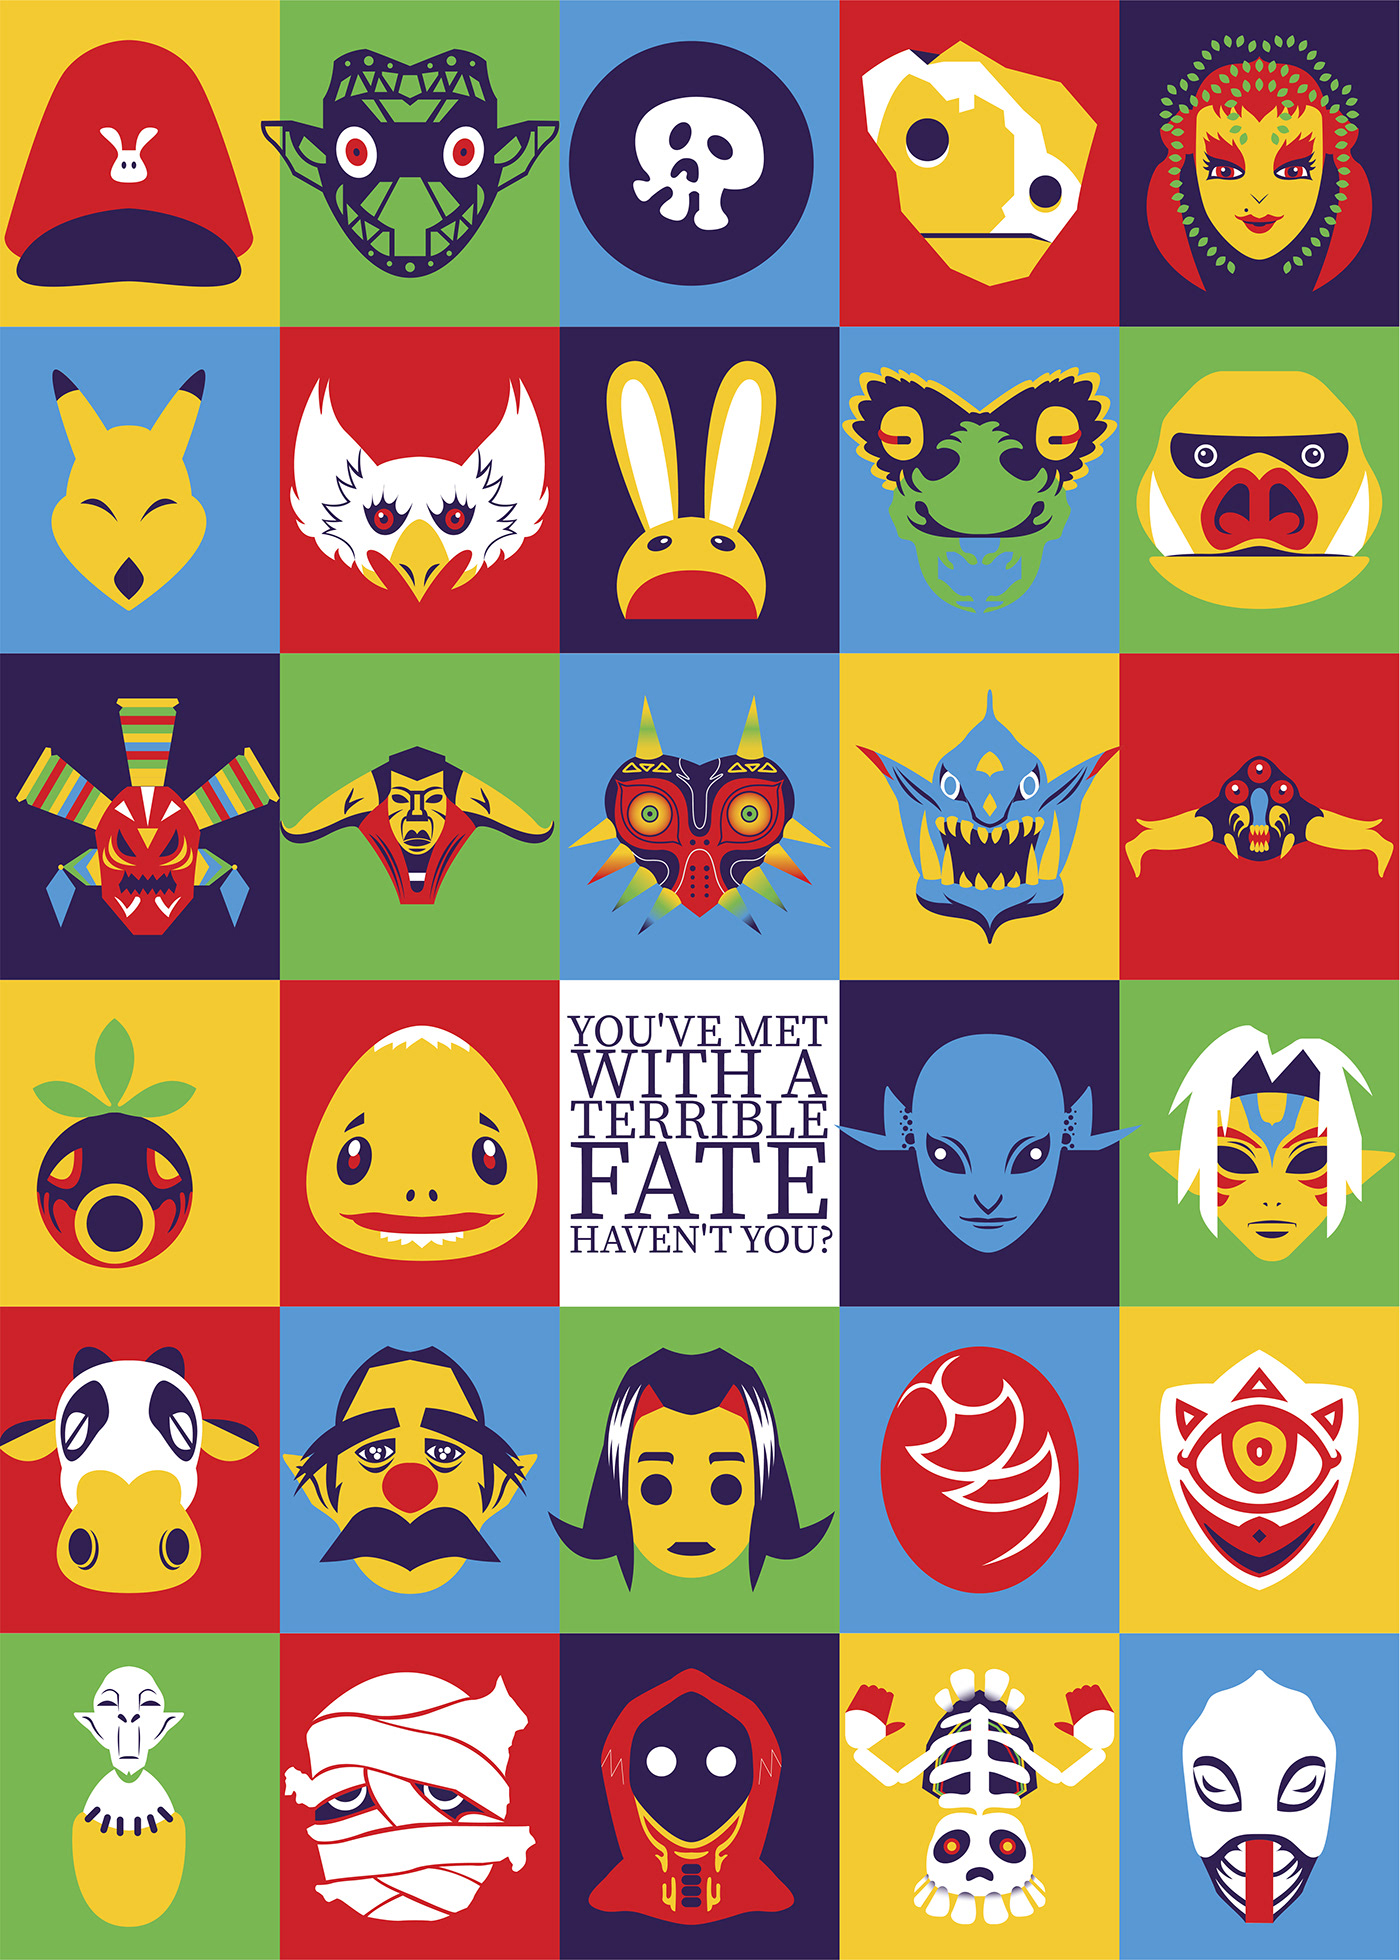 THE LEGEND OF ZELDA Majoras mask masks Nintendo Poster Design adobe illustrator 90s games nintendo 64